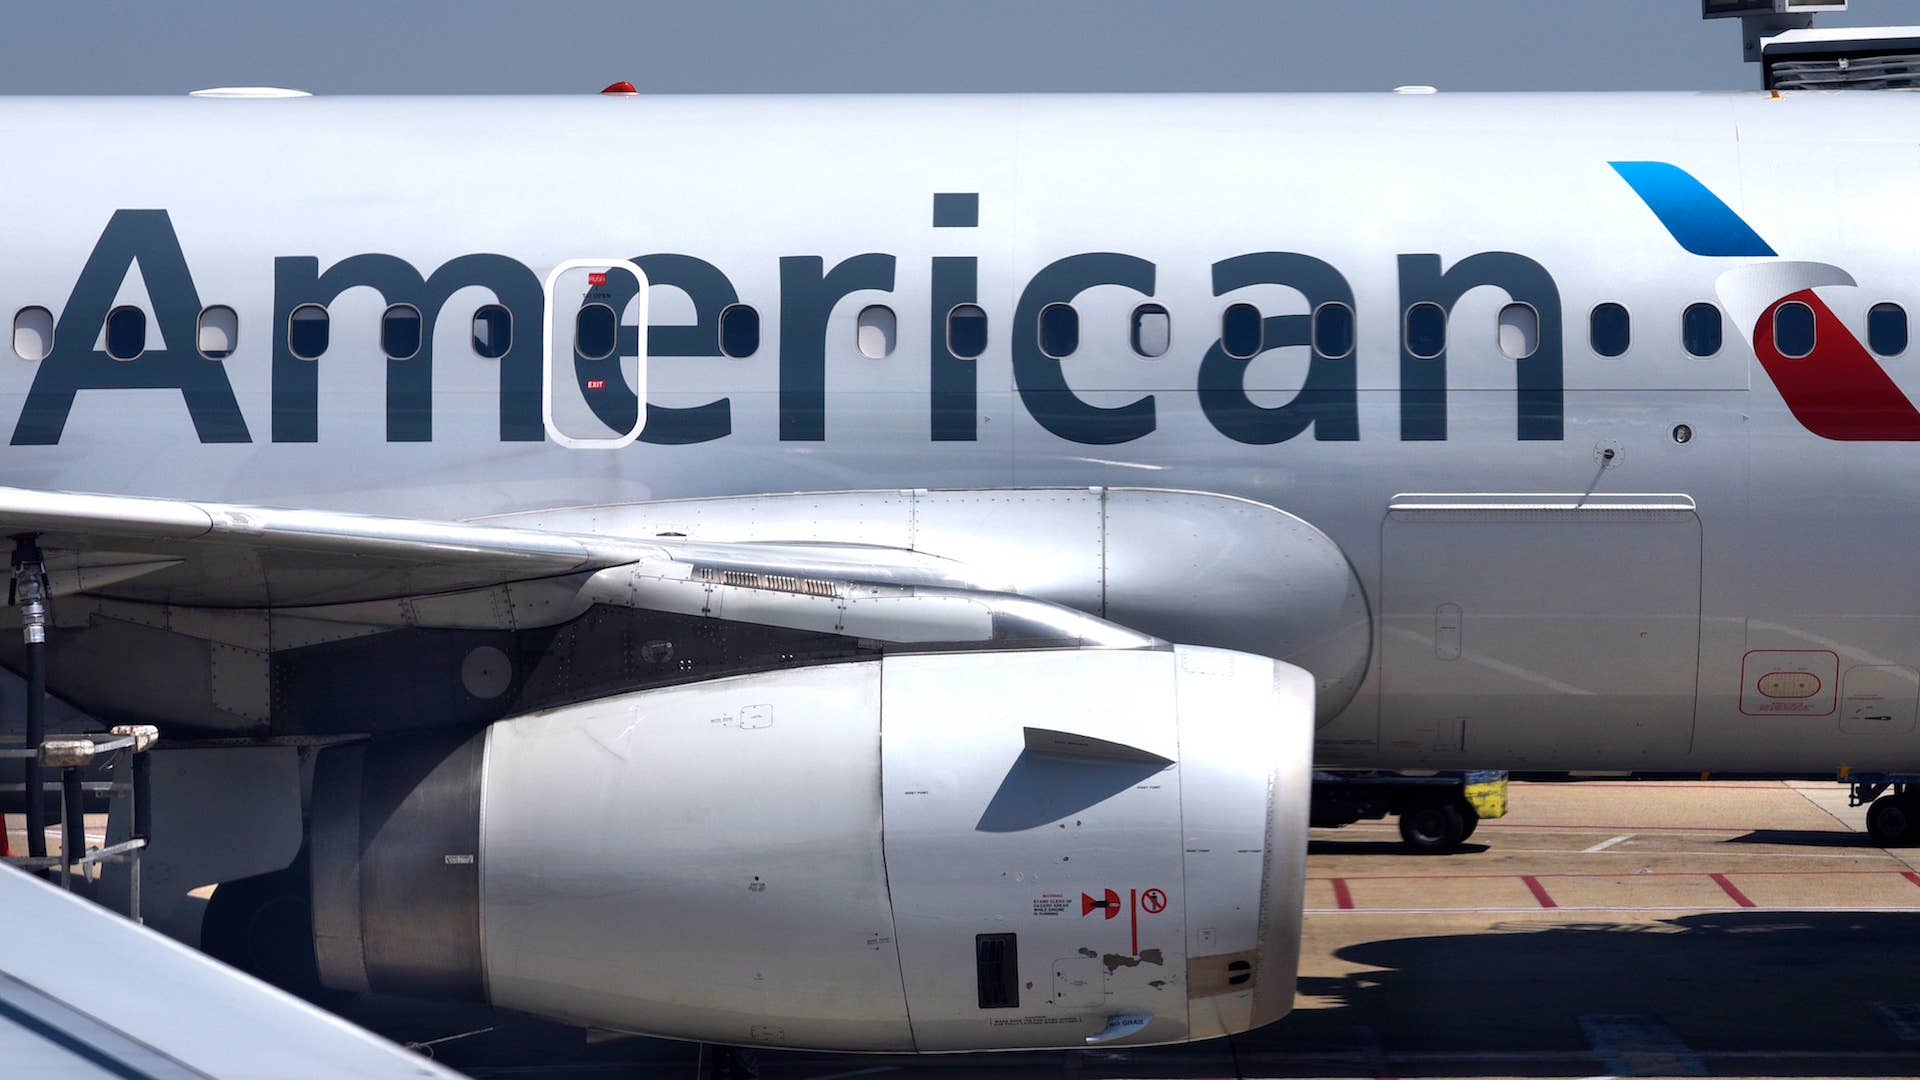 American Airlines passenger aircraft parked at gate at Ronald Reagan Washington National Airport.